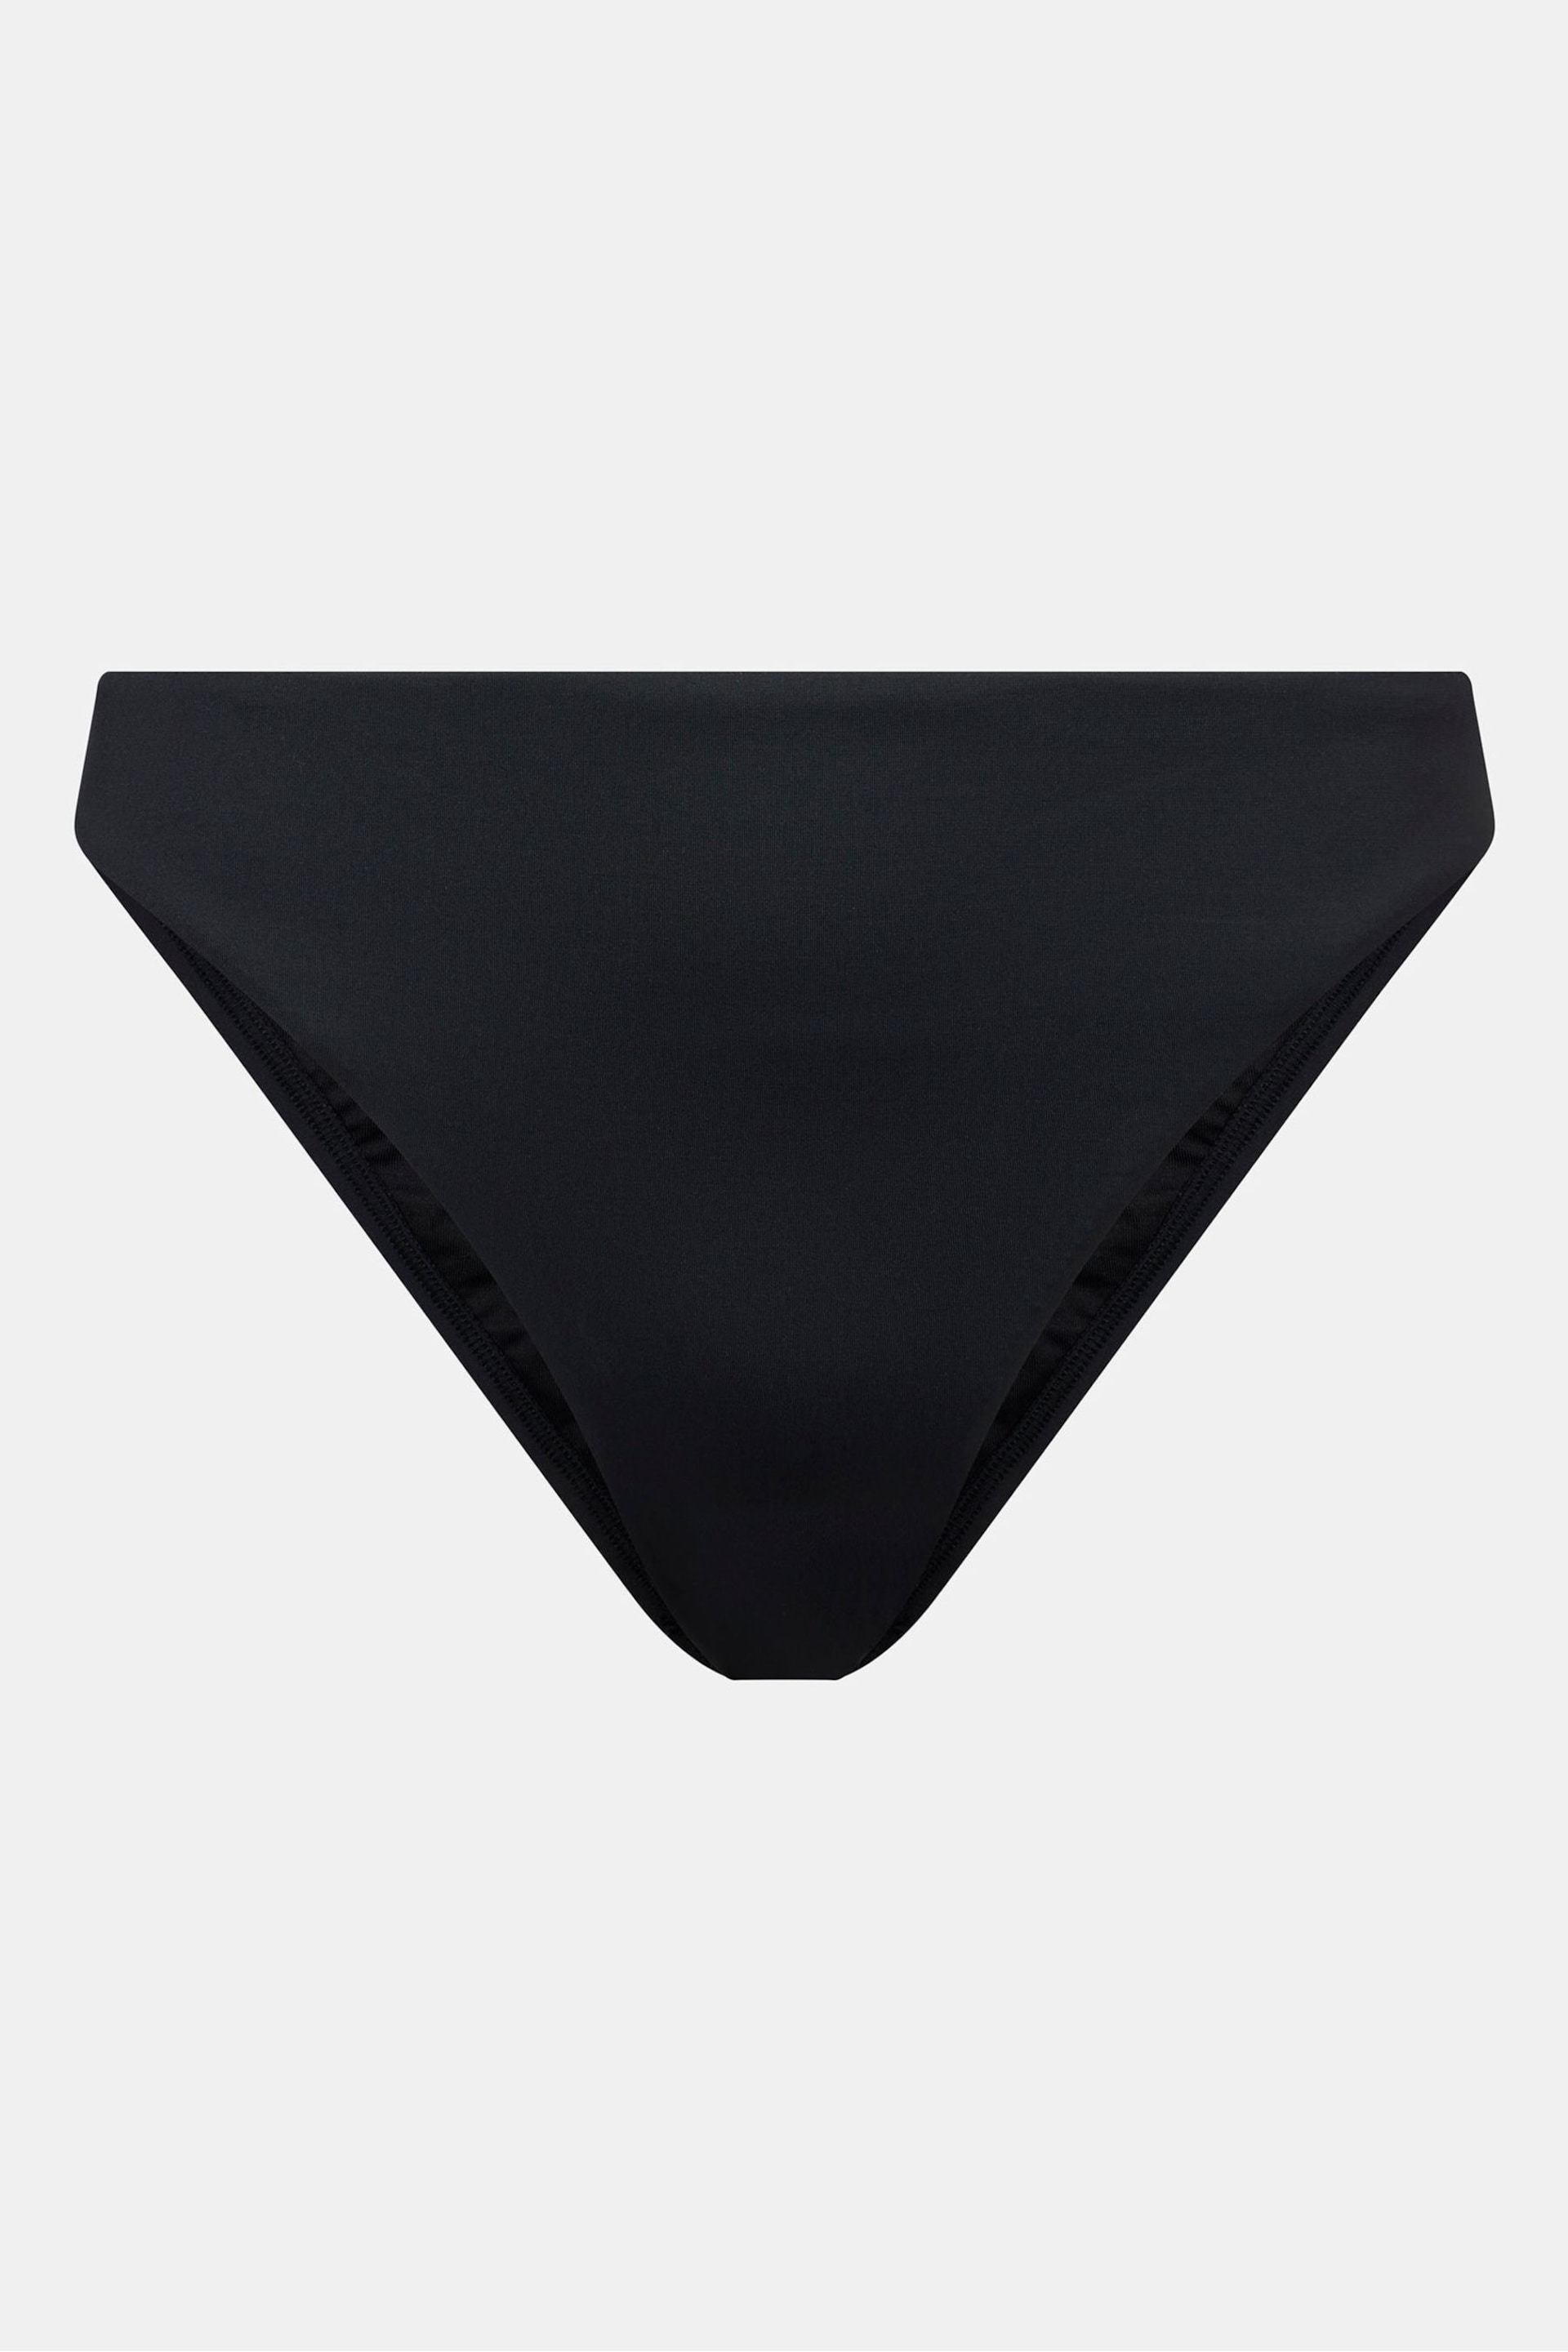 Mint Velvet Black Mid Rise Bikini Briefs - Image 5 of 6